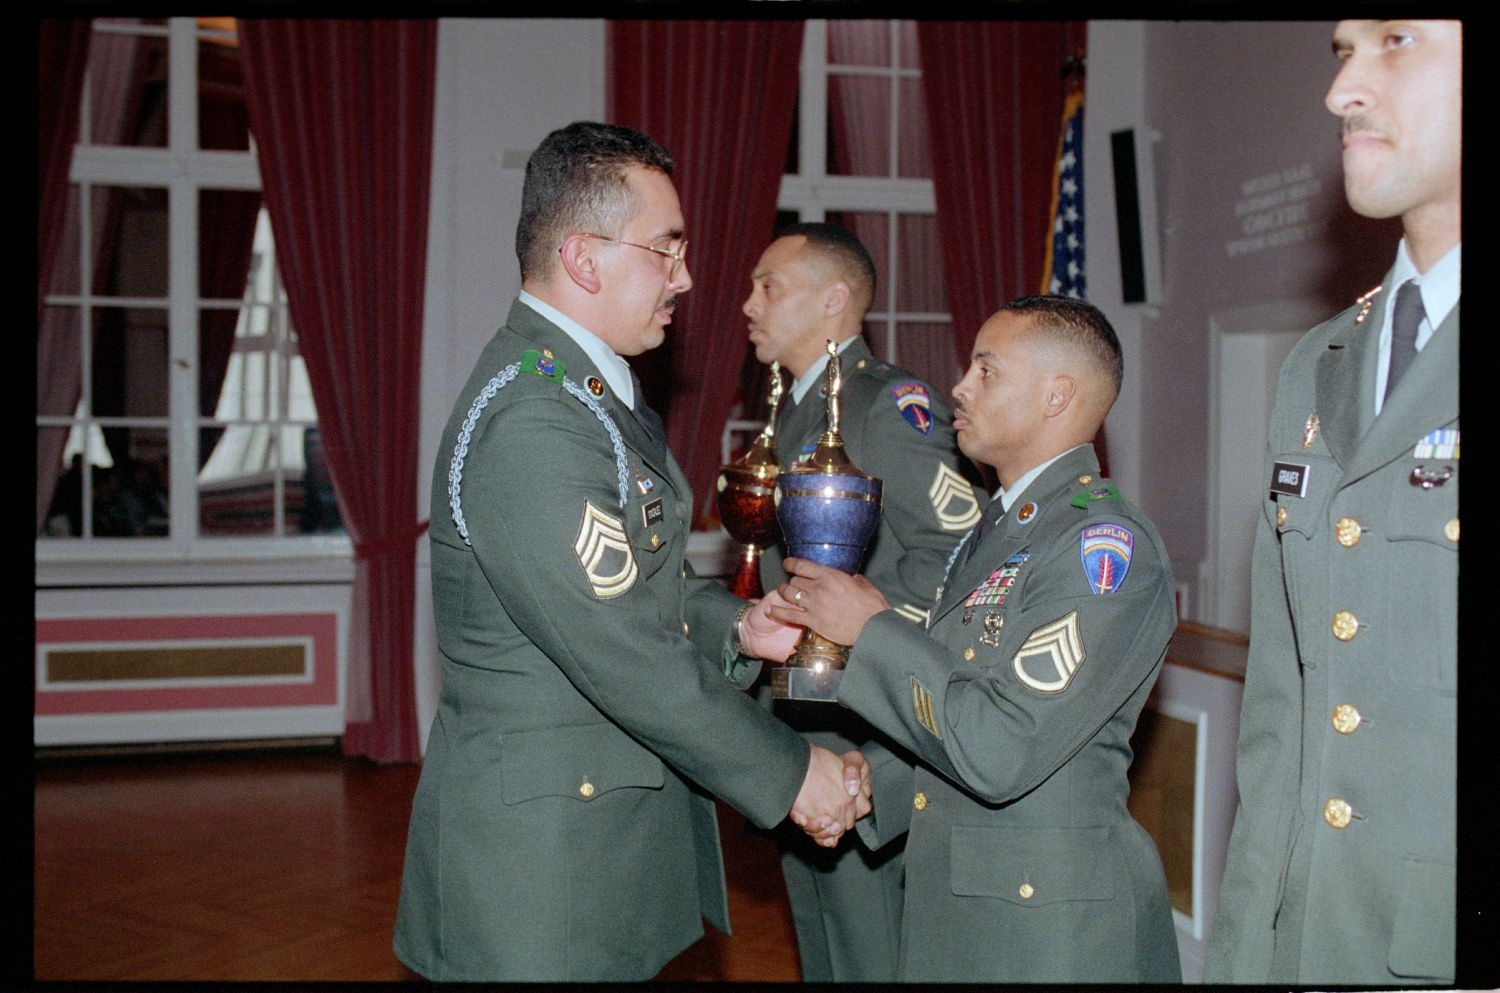 Fotografie: Auszeichnung von Unteroffizieren des 5th Battalion 502nd Infantry Regiment der U.S. Army Berlin in Berlin-Dahlem